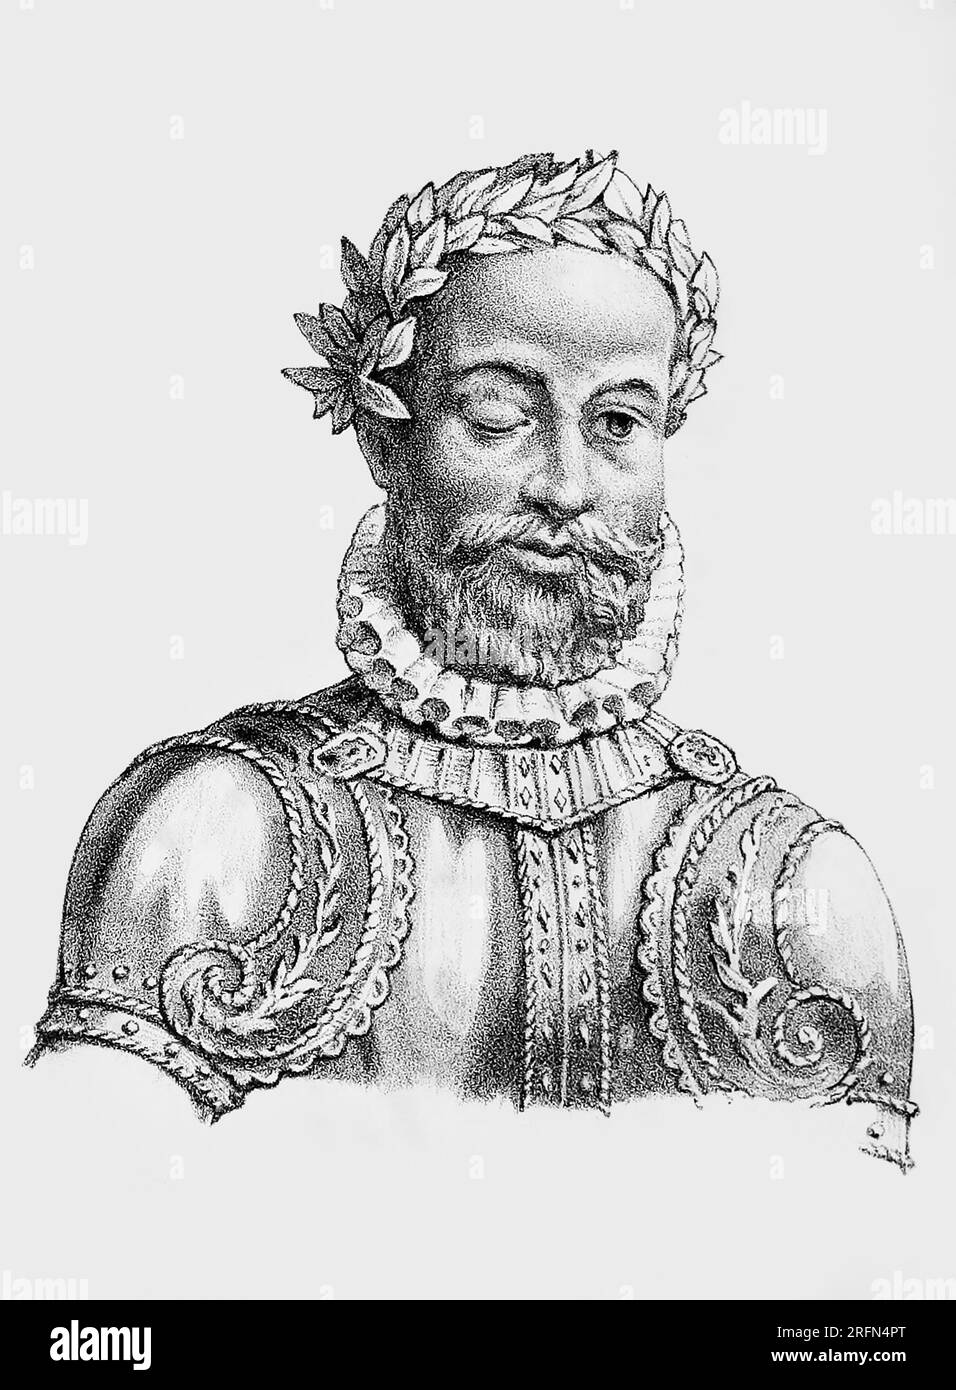 Luis de Camoes (c. 1524 o 1525 - 10 giugno 1580) è considerato il più grande poeta del Portogallo, meglio ricordato per la sua opera epica i Lusiadi. Il giorno della sua morte, il 10 giugno, è la giornata nazionale del Portogallo. Incisione anonima, 1854. Foto Stock